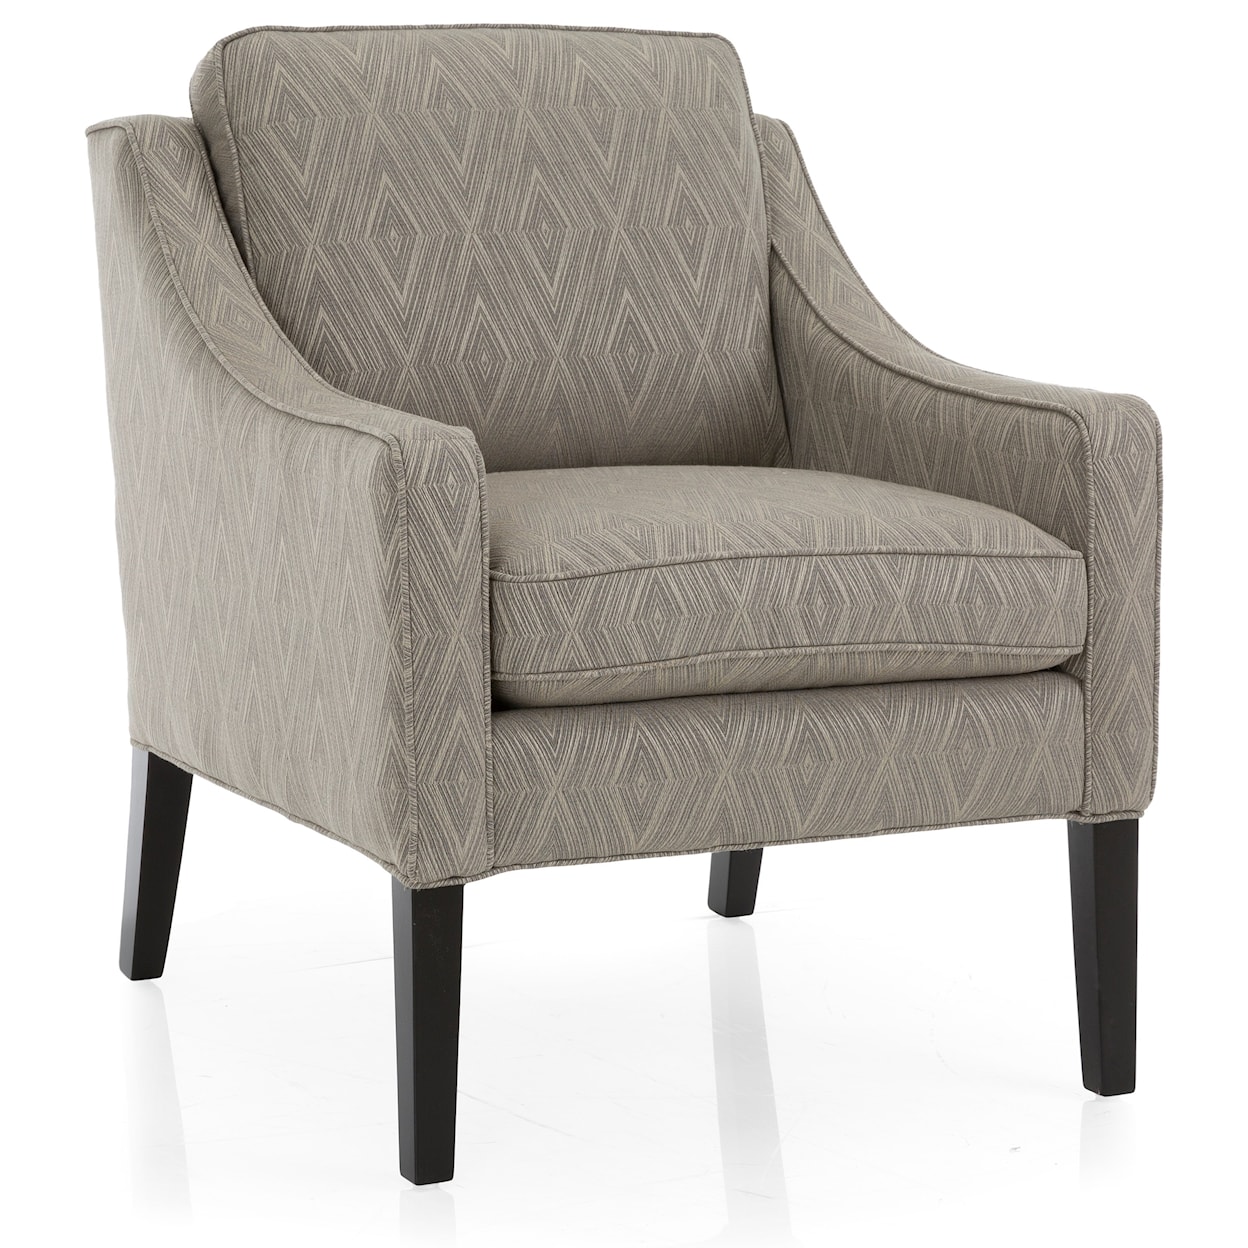 Decor-Rest Harper Upholstered Chair